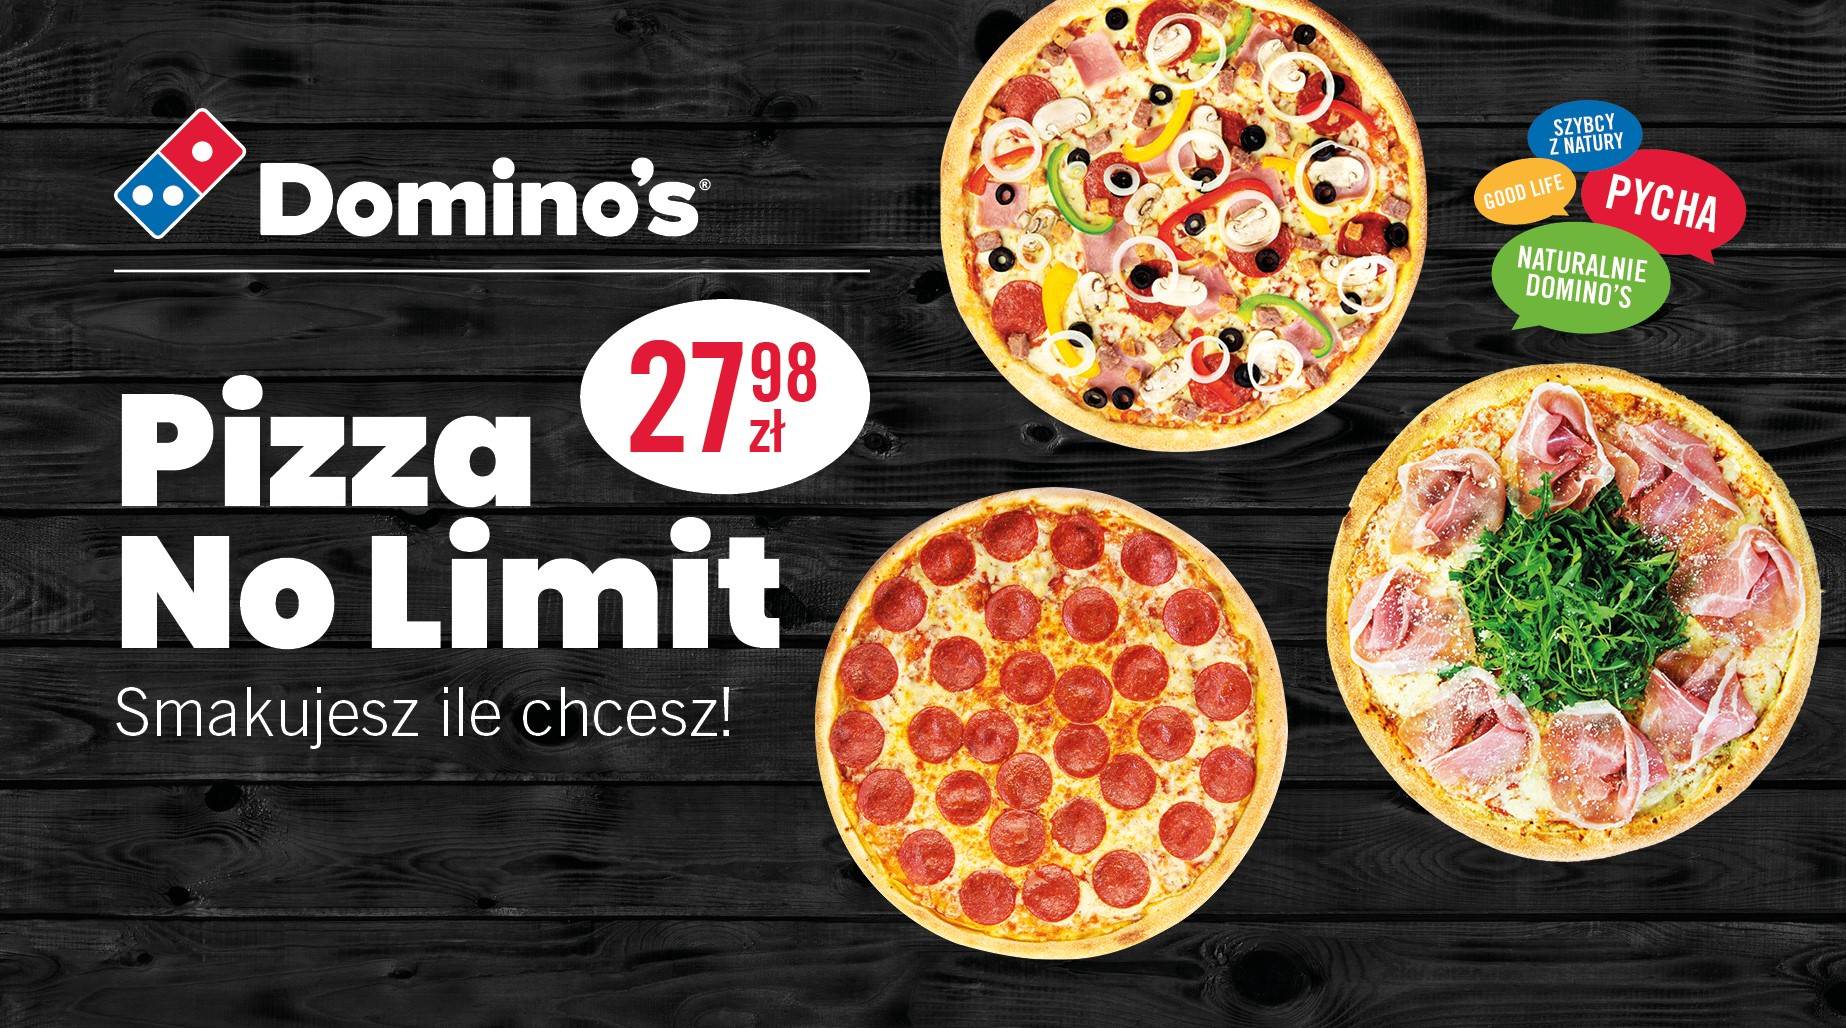 Domino's| Pizza No Limit- Smakujesz ile chcesz